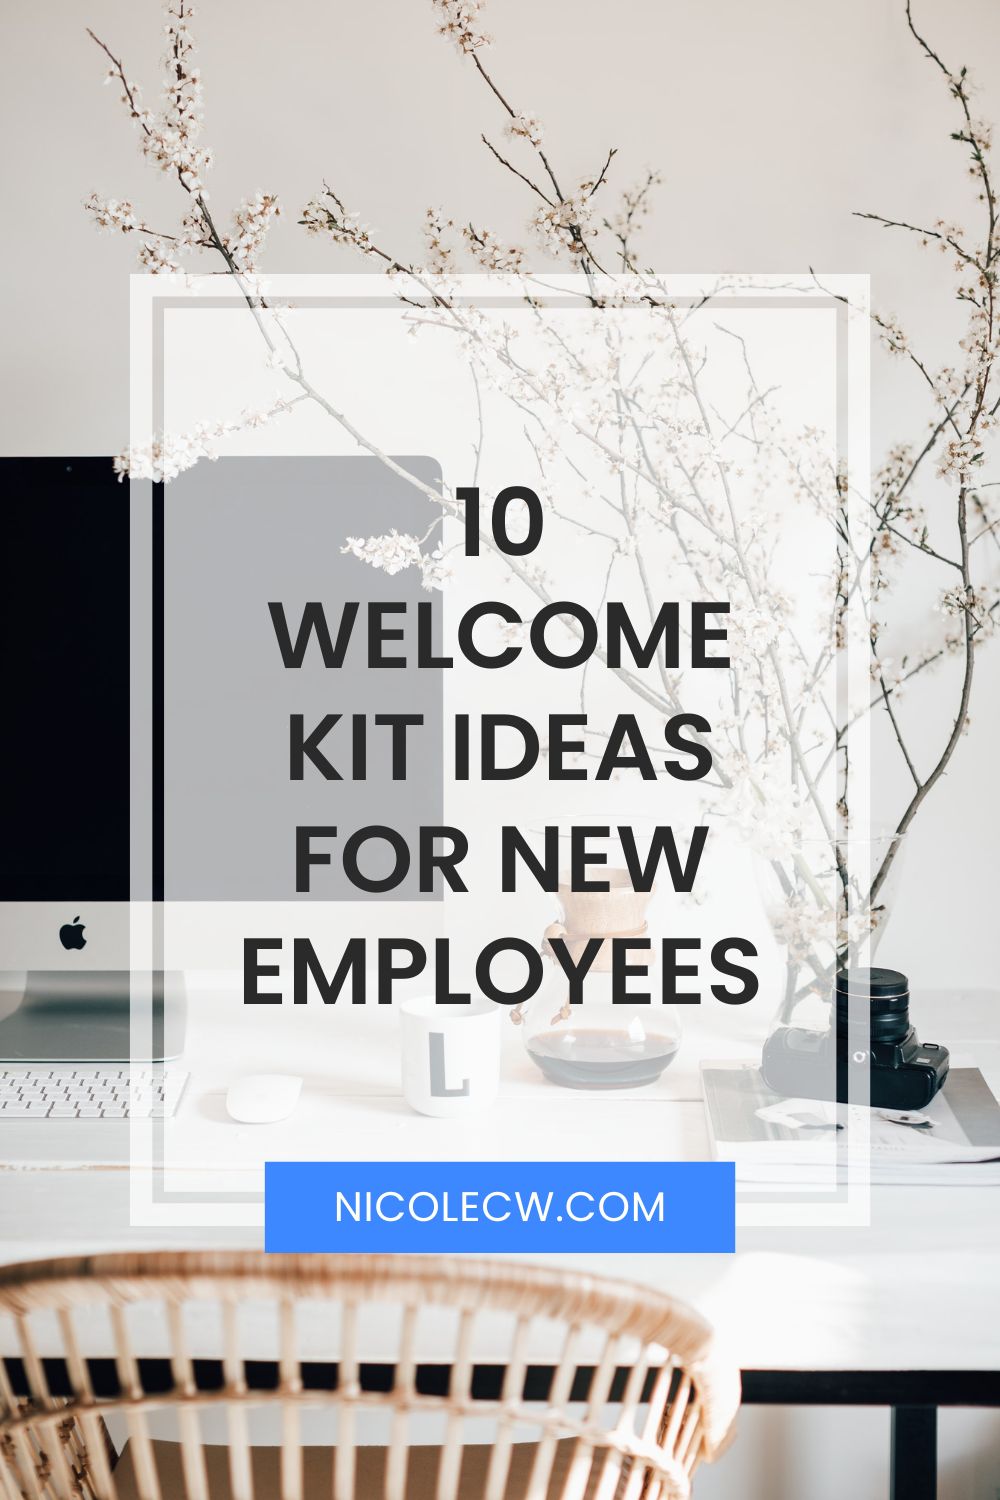 [Entrepreneurship Tips] 10 Welcome Kit Ideas For New Employees